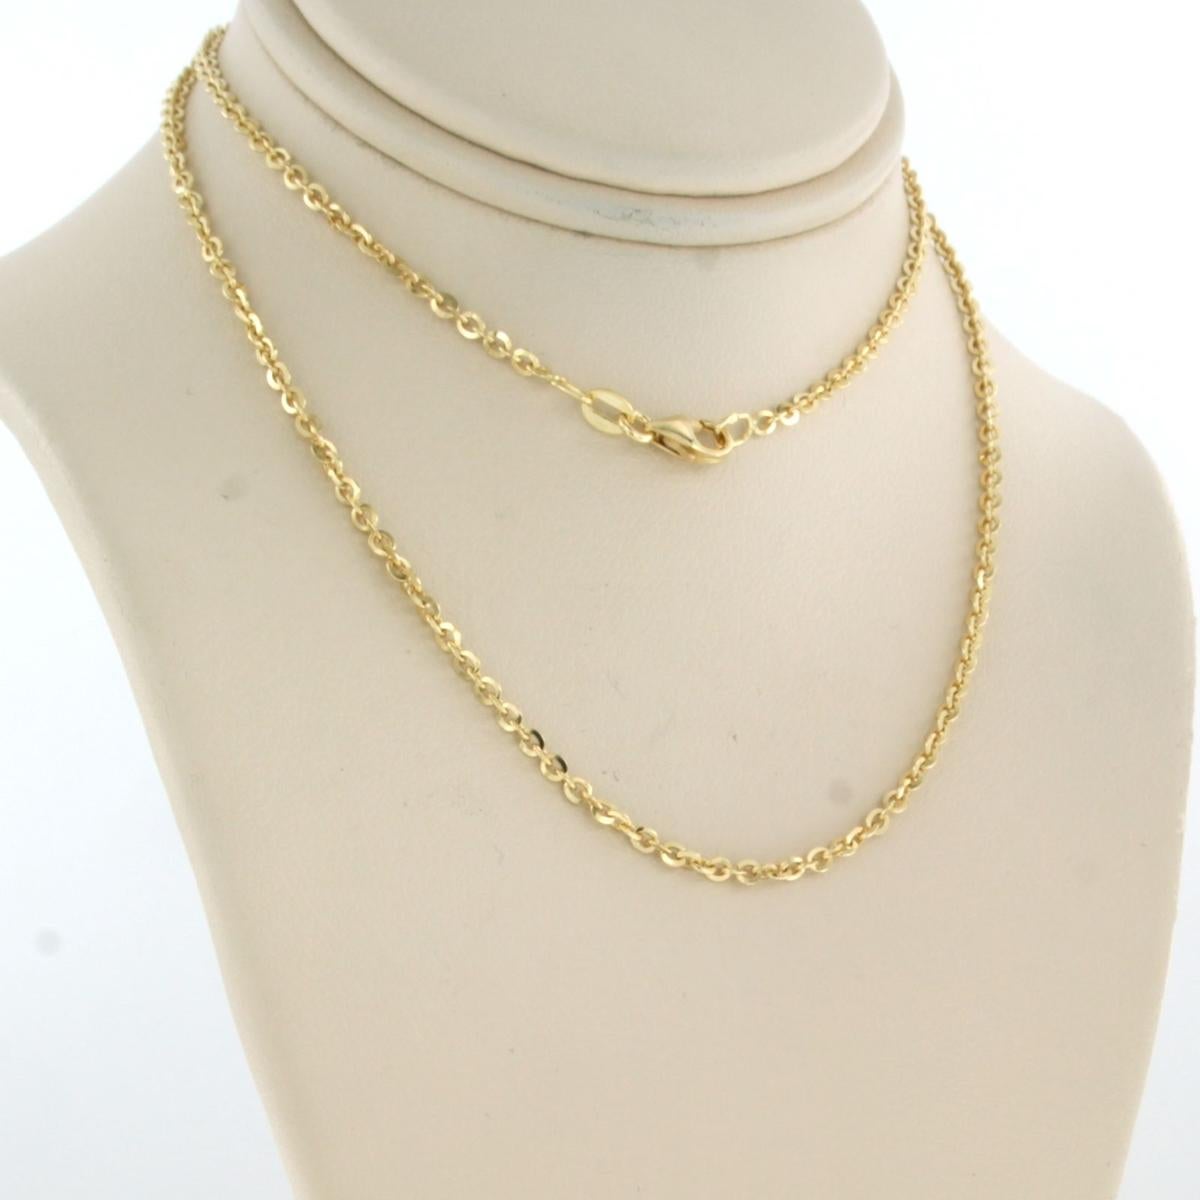 40 cm necklace